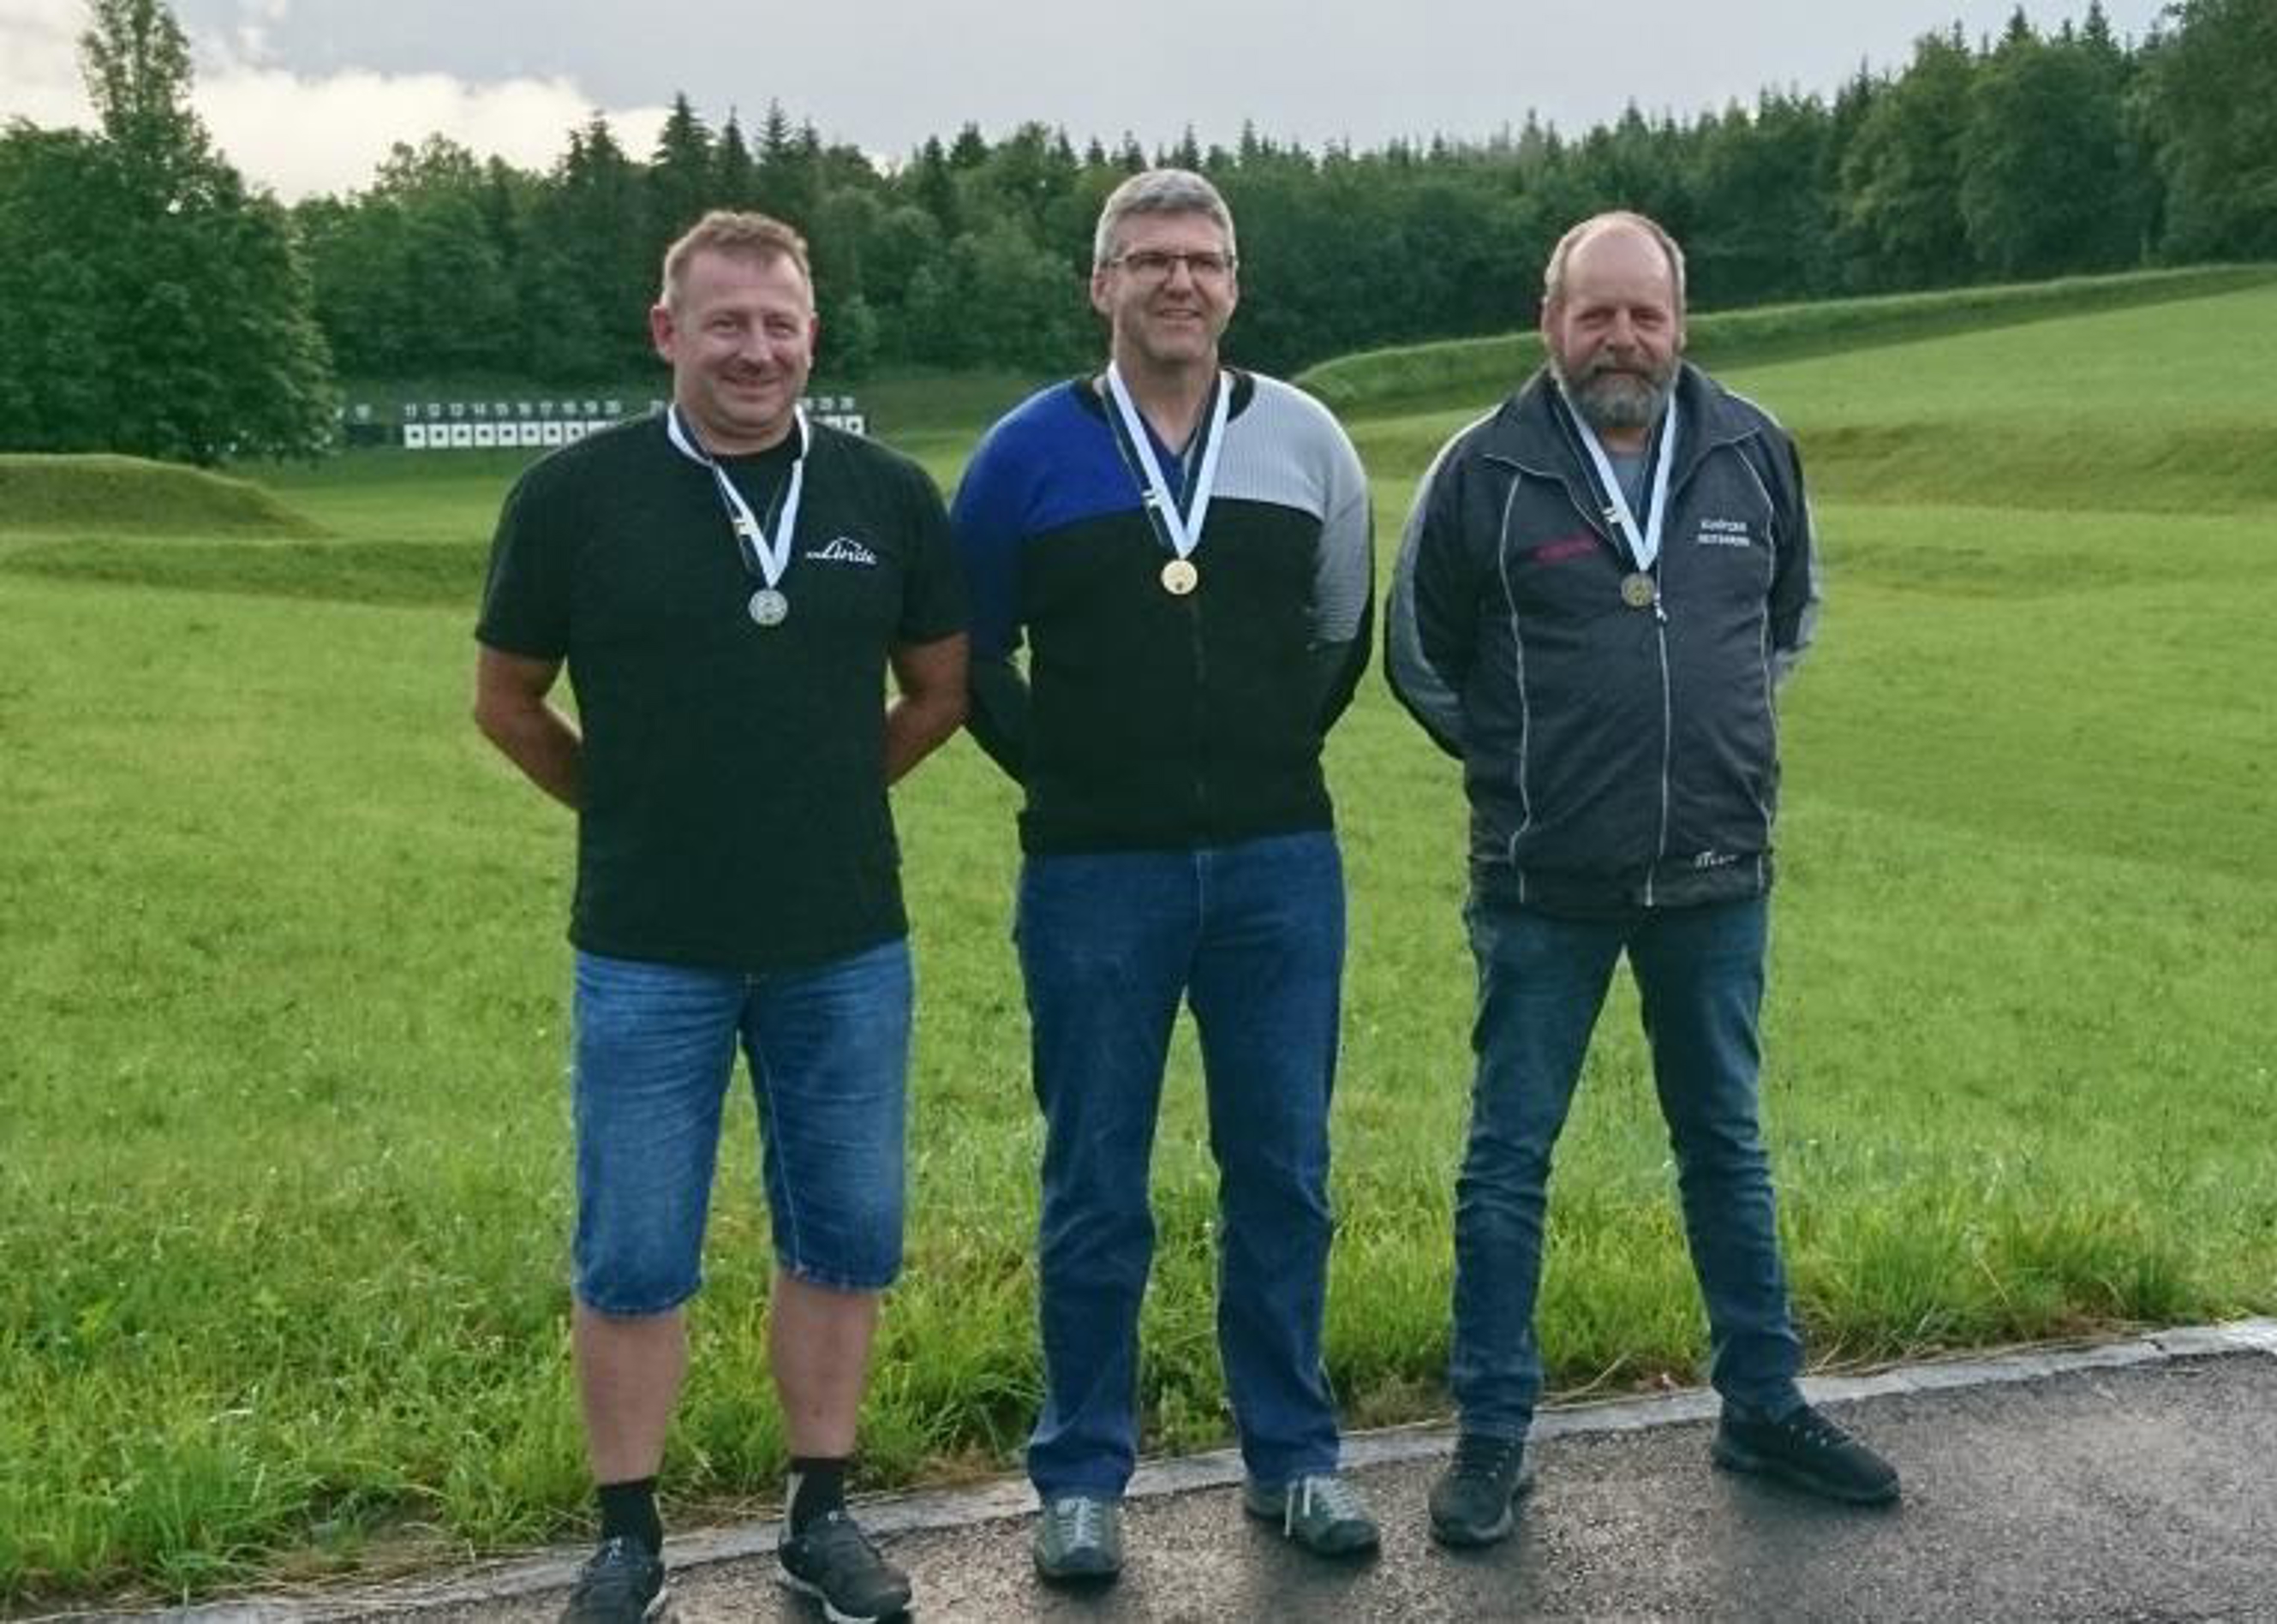 Le podium de la finale fribourgeoise du match olympic au fusil 300 m (armes de sport) avec, de gauche à droite, Thomas Pfister (2e), Markus Brügger (1er) et Roger Siffert (3e).